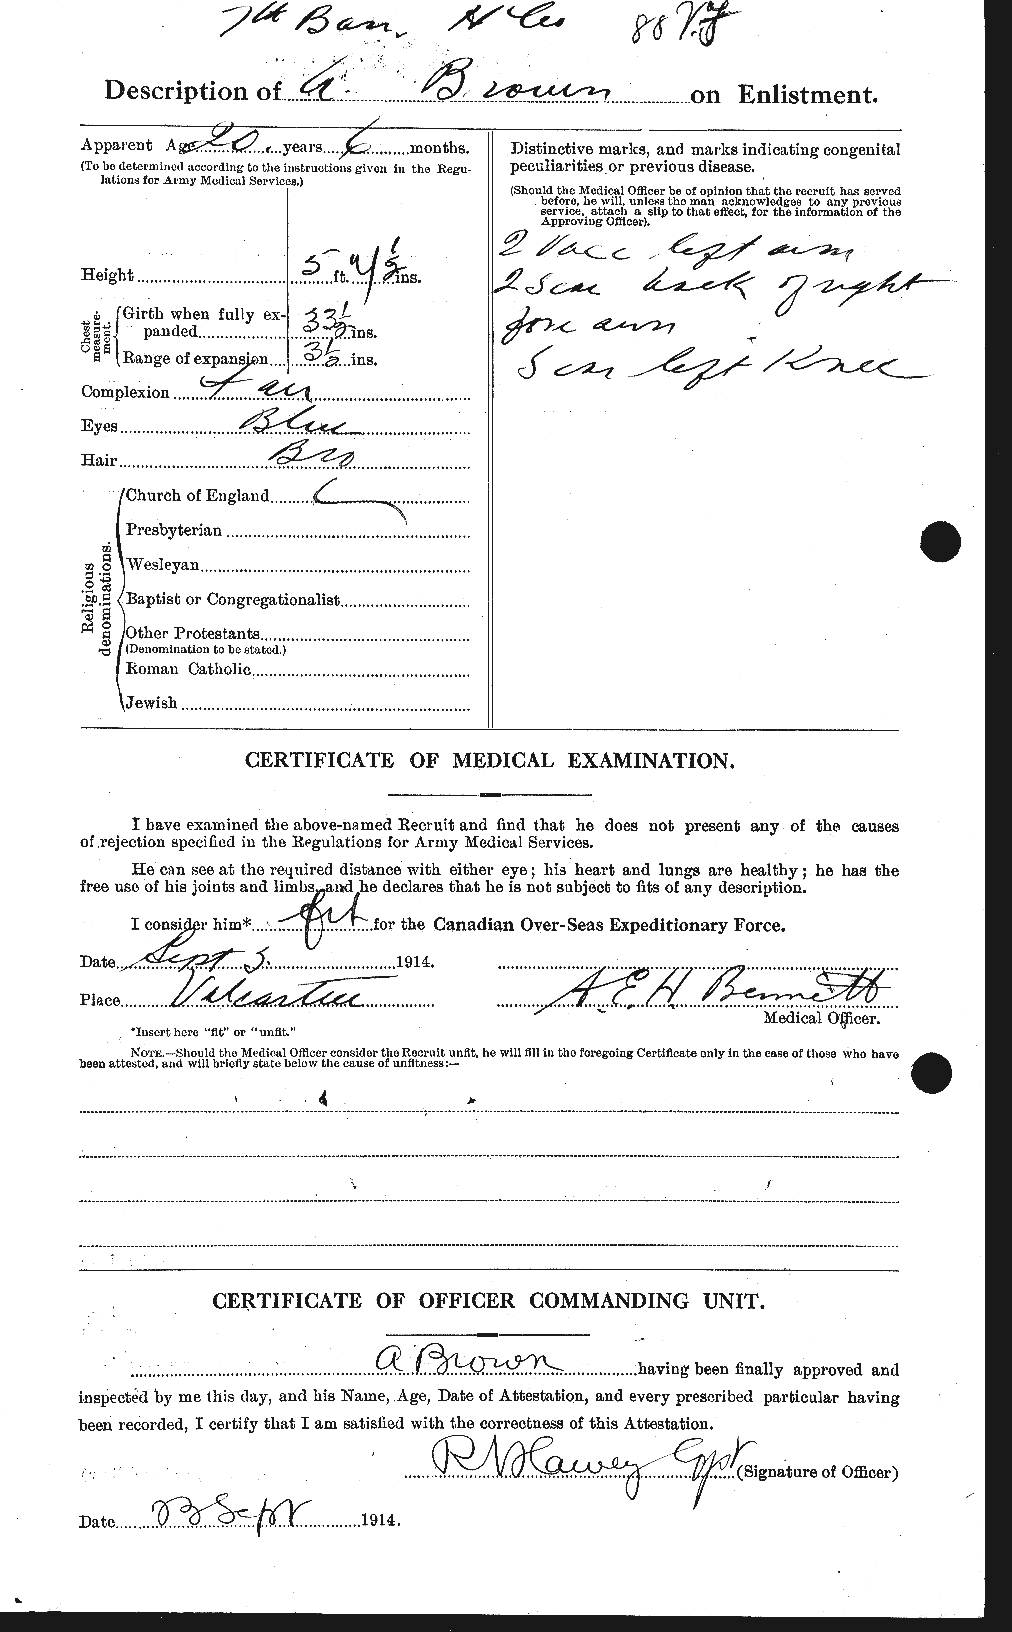 Dossiers du Personnel de la Première Guerre mondiale - CEC 266916b